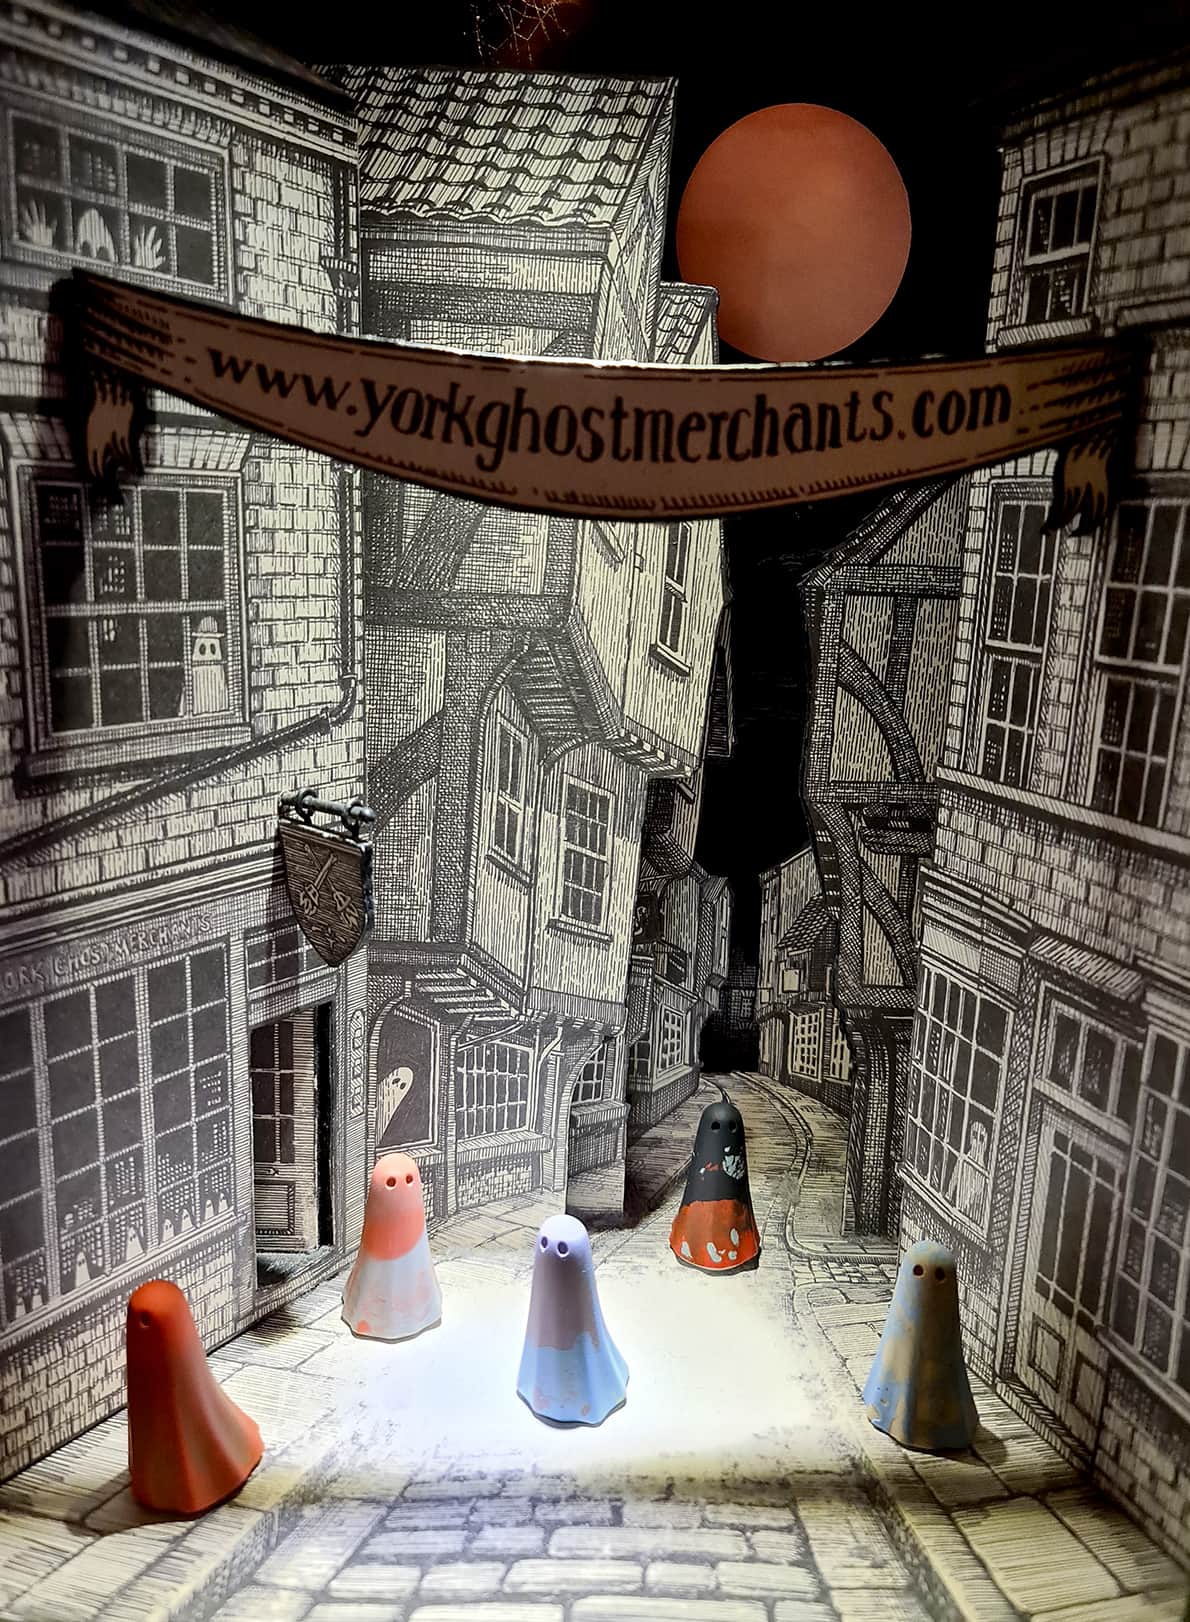 In foto si vedono 5 statuine di piccoli fantasmi con il lenzuolo colorato addosso, sullo sfondo di un cartonato che riprende il centro storico di York